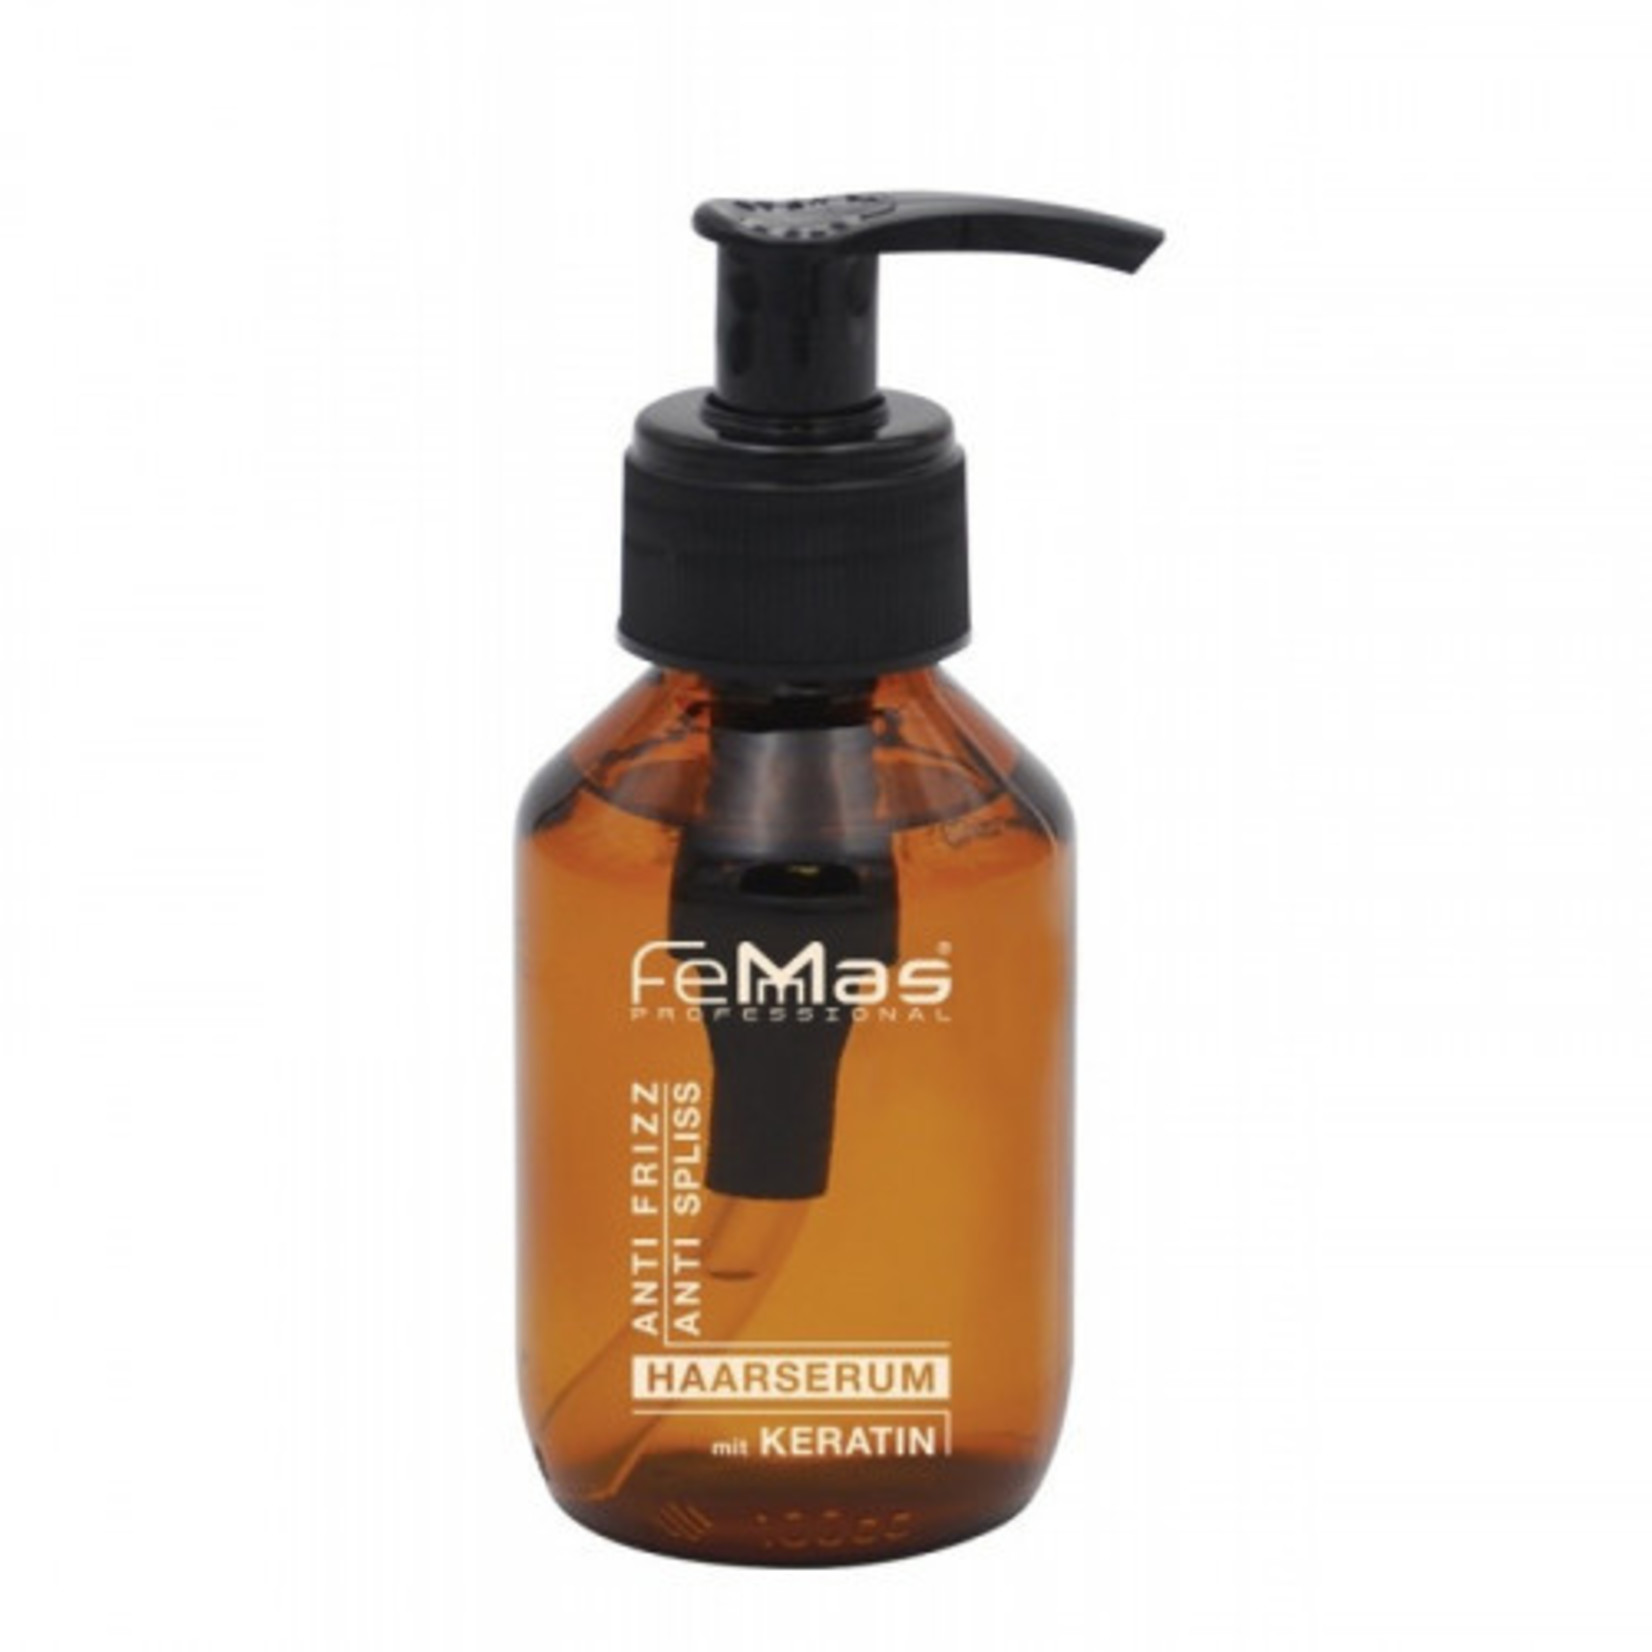 Femmas Femmas Professional hair serum with keratin 100ml